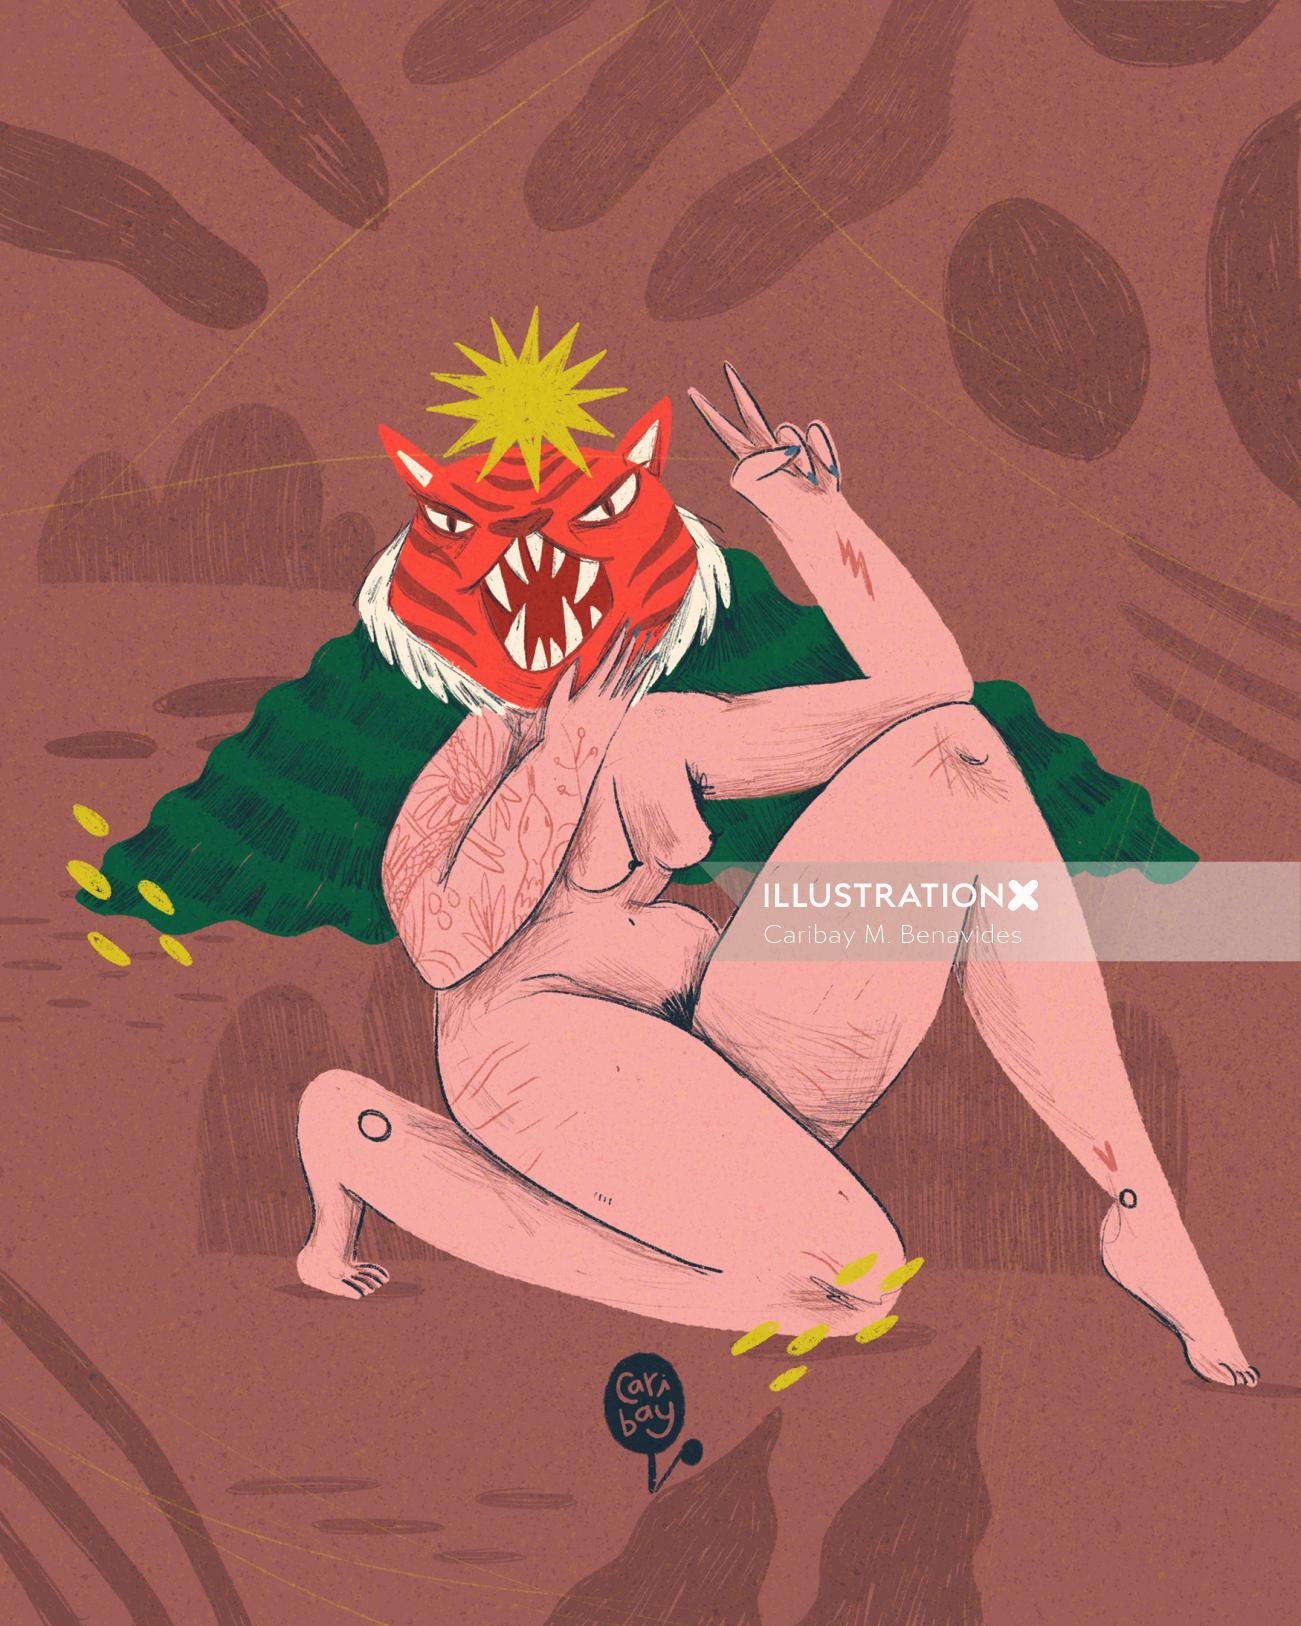 カリベイM.ベナビデスによる野生の女性のイラスト